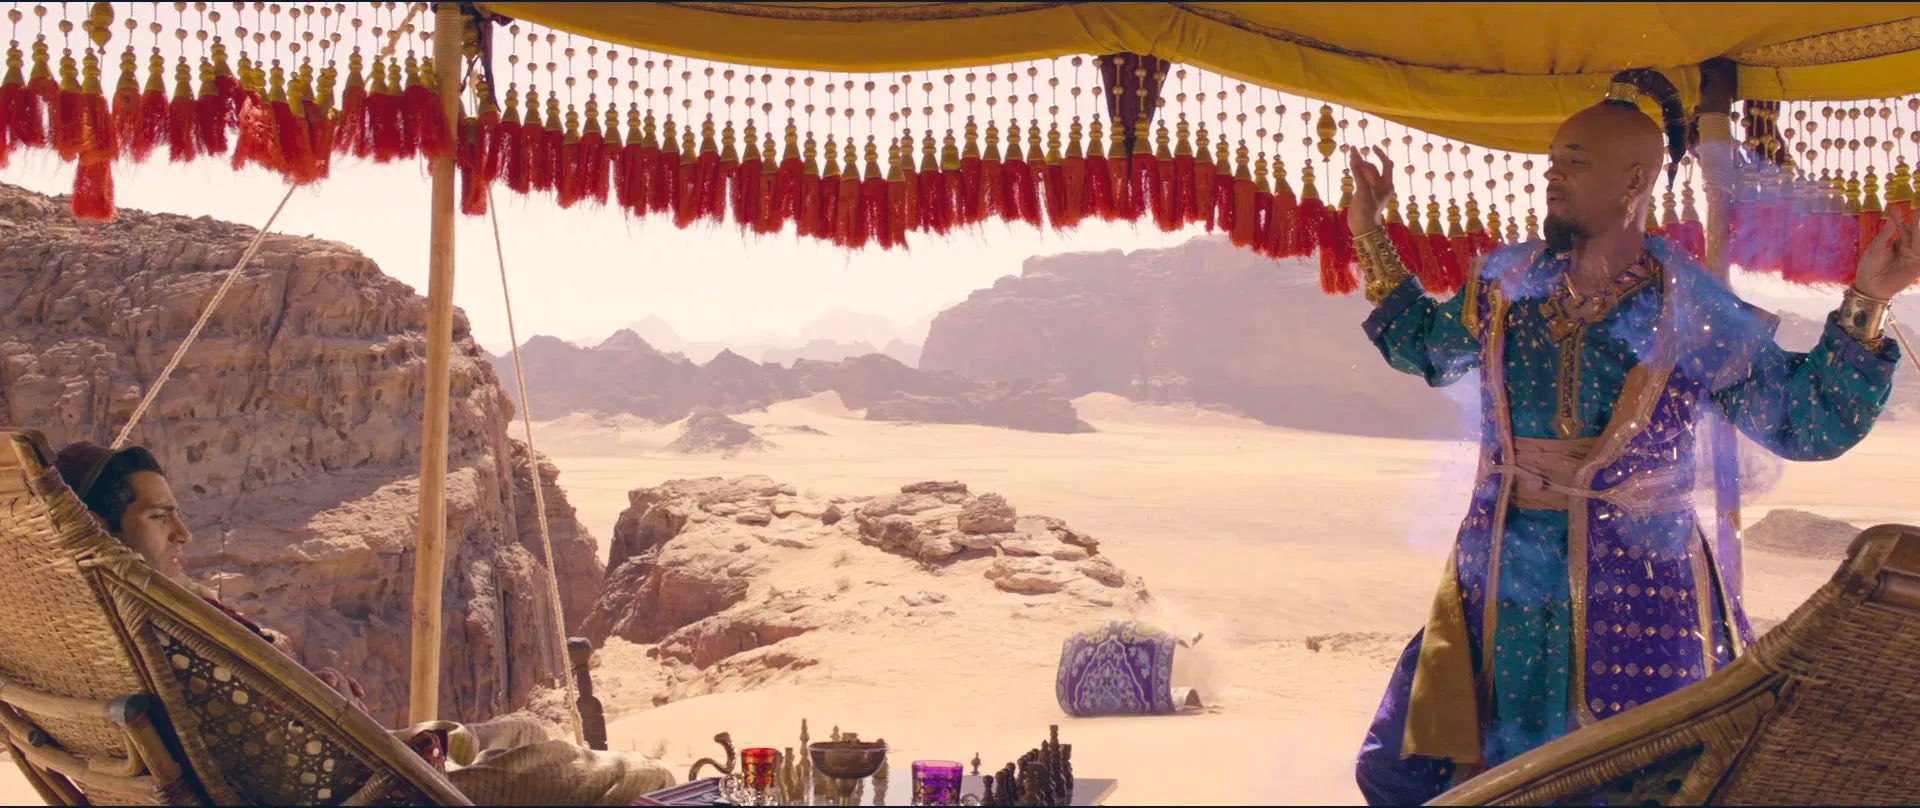 𝘺𝘰𝘭𝘪𝘤𝘦 アラジンとジーニーが砂漠で話してるシーンの魔法の絨毯 座り込んで何してるんだろう って思ったら 砂でシンデレラ城作ってディズニー映画のオープニング再現してるのあまりに愛おしすぎない アラジン T Co Aq3xmopf1u Twitter